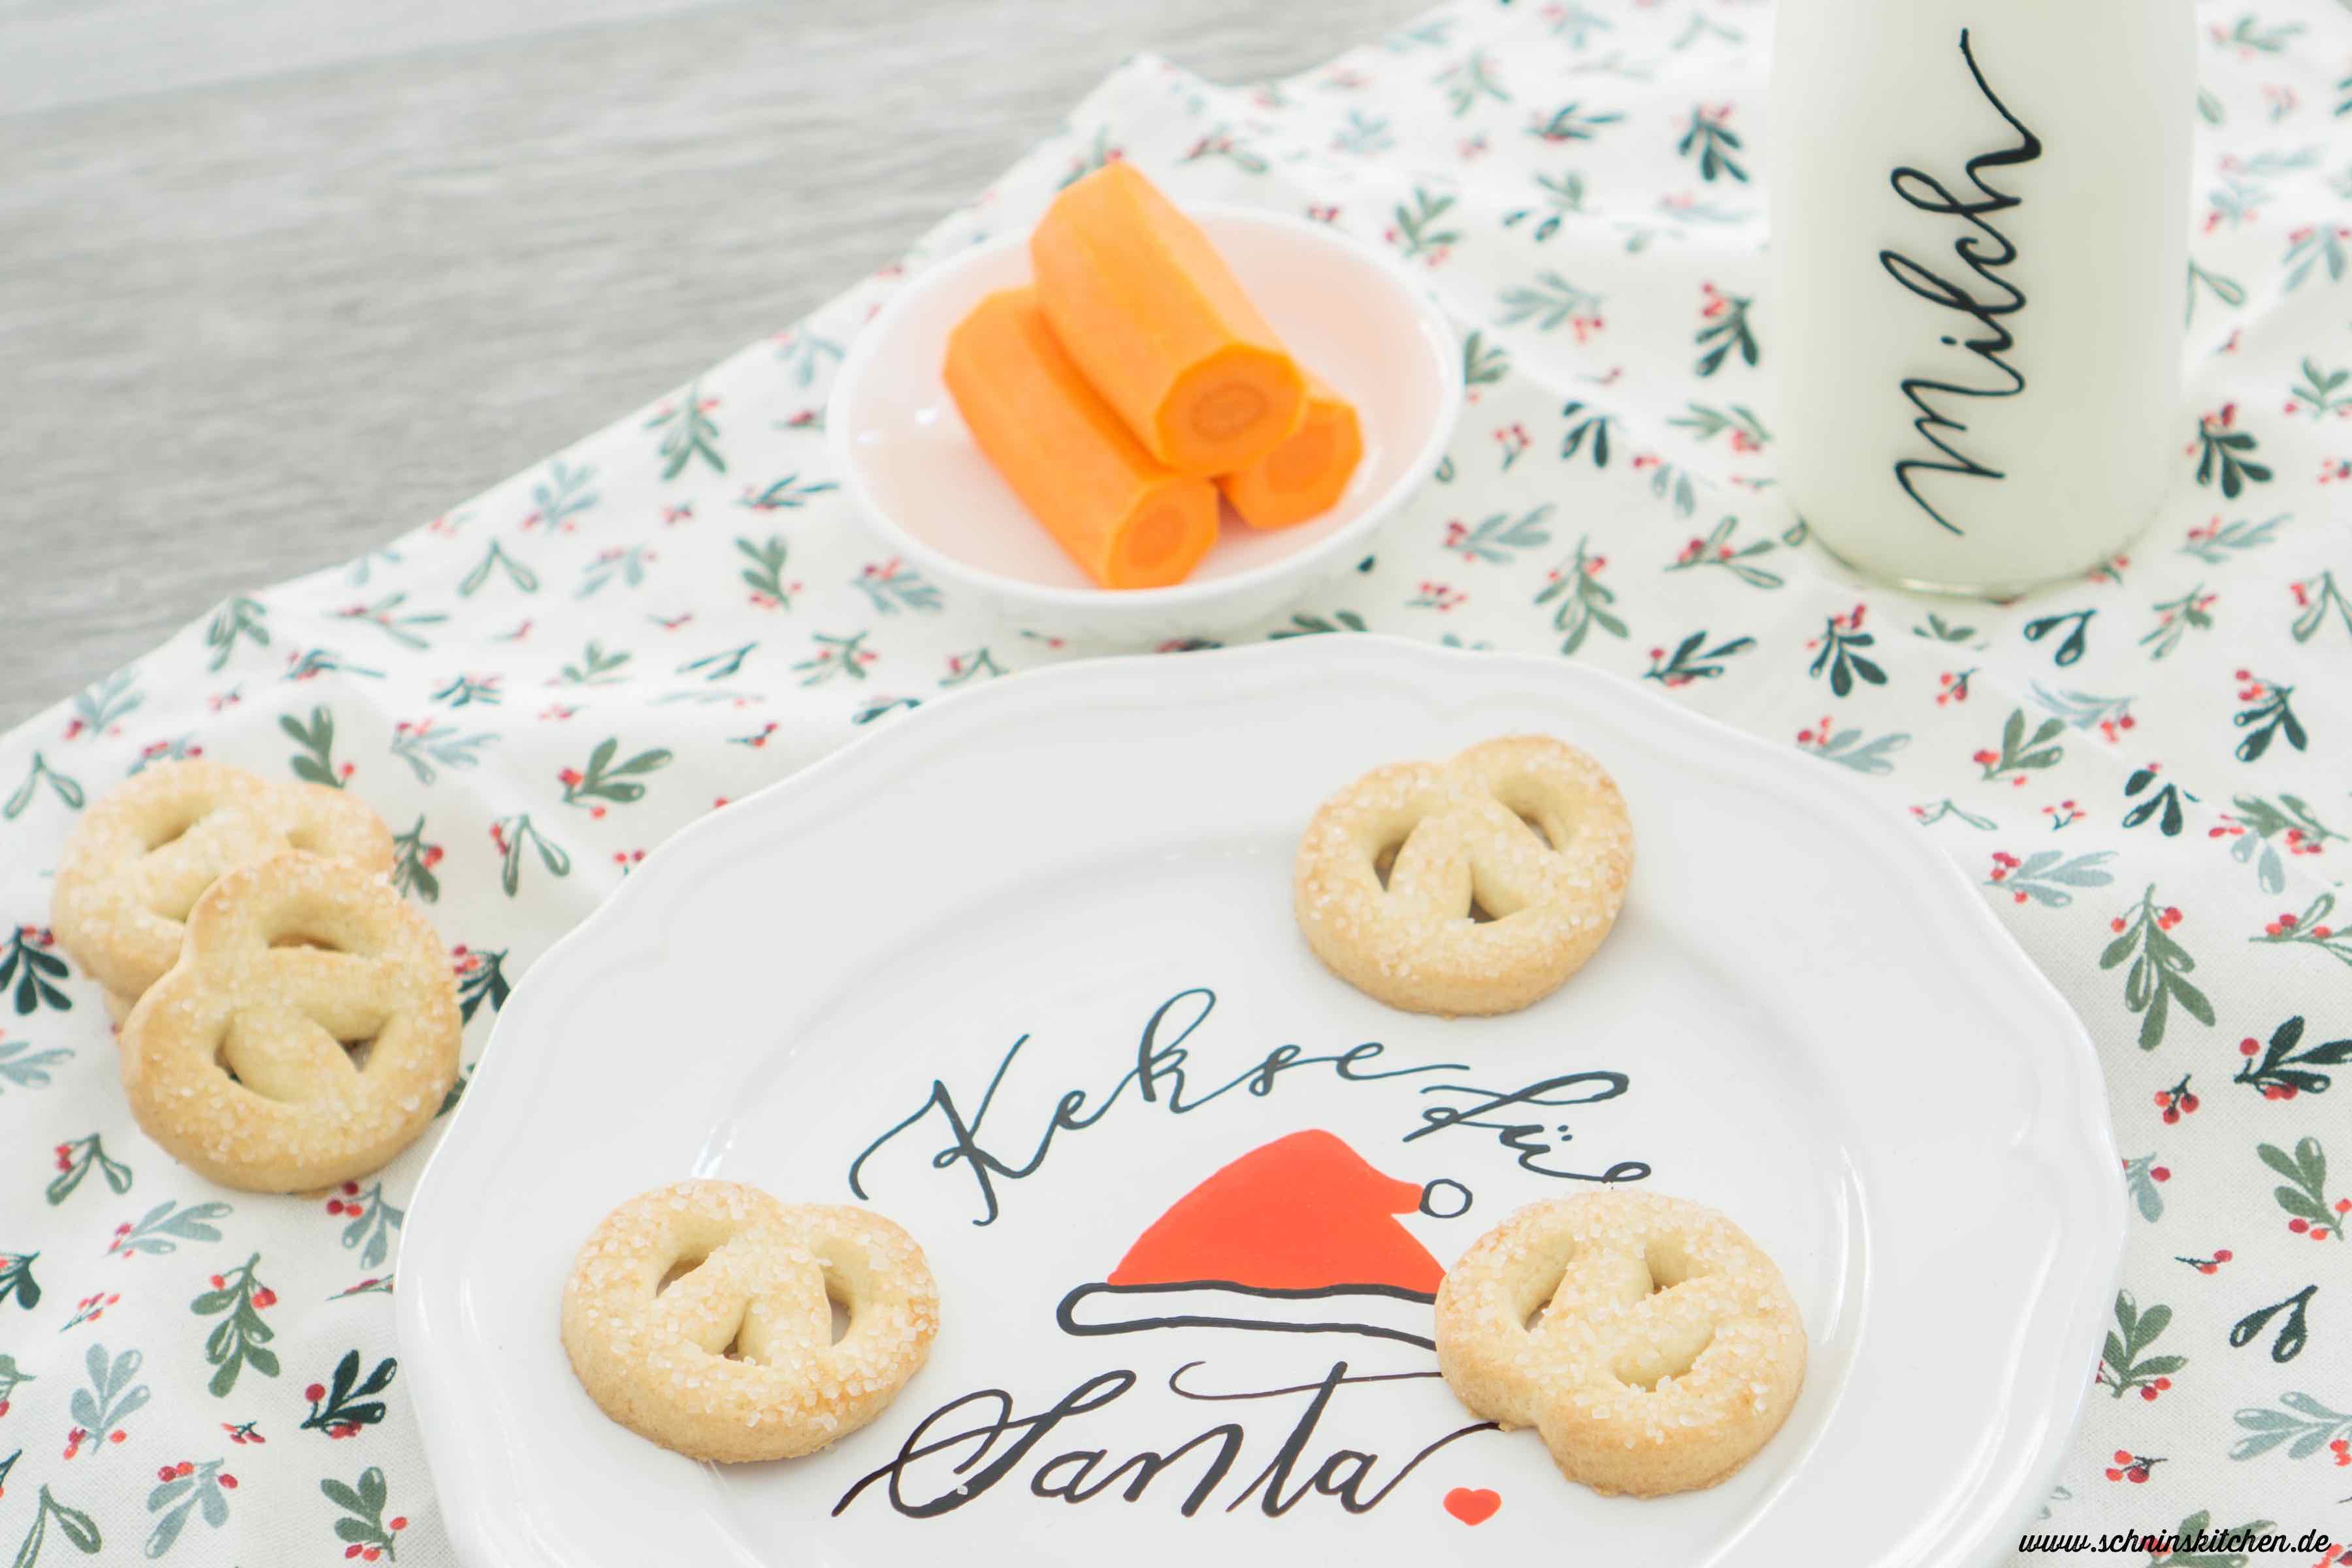 DIY Kekse für den Weihnachtsmann (Cookies for Santa) - Geschirr bemalen mit Lettering | www.schninskitchen.de